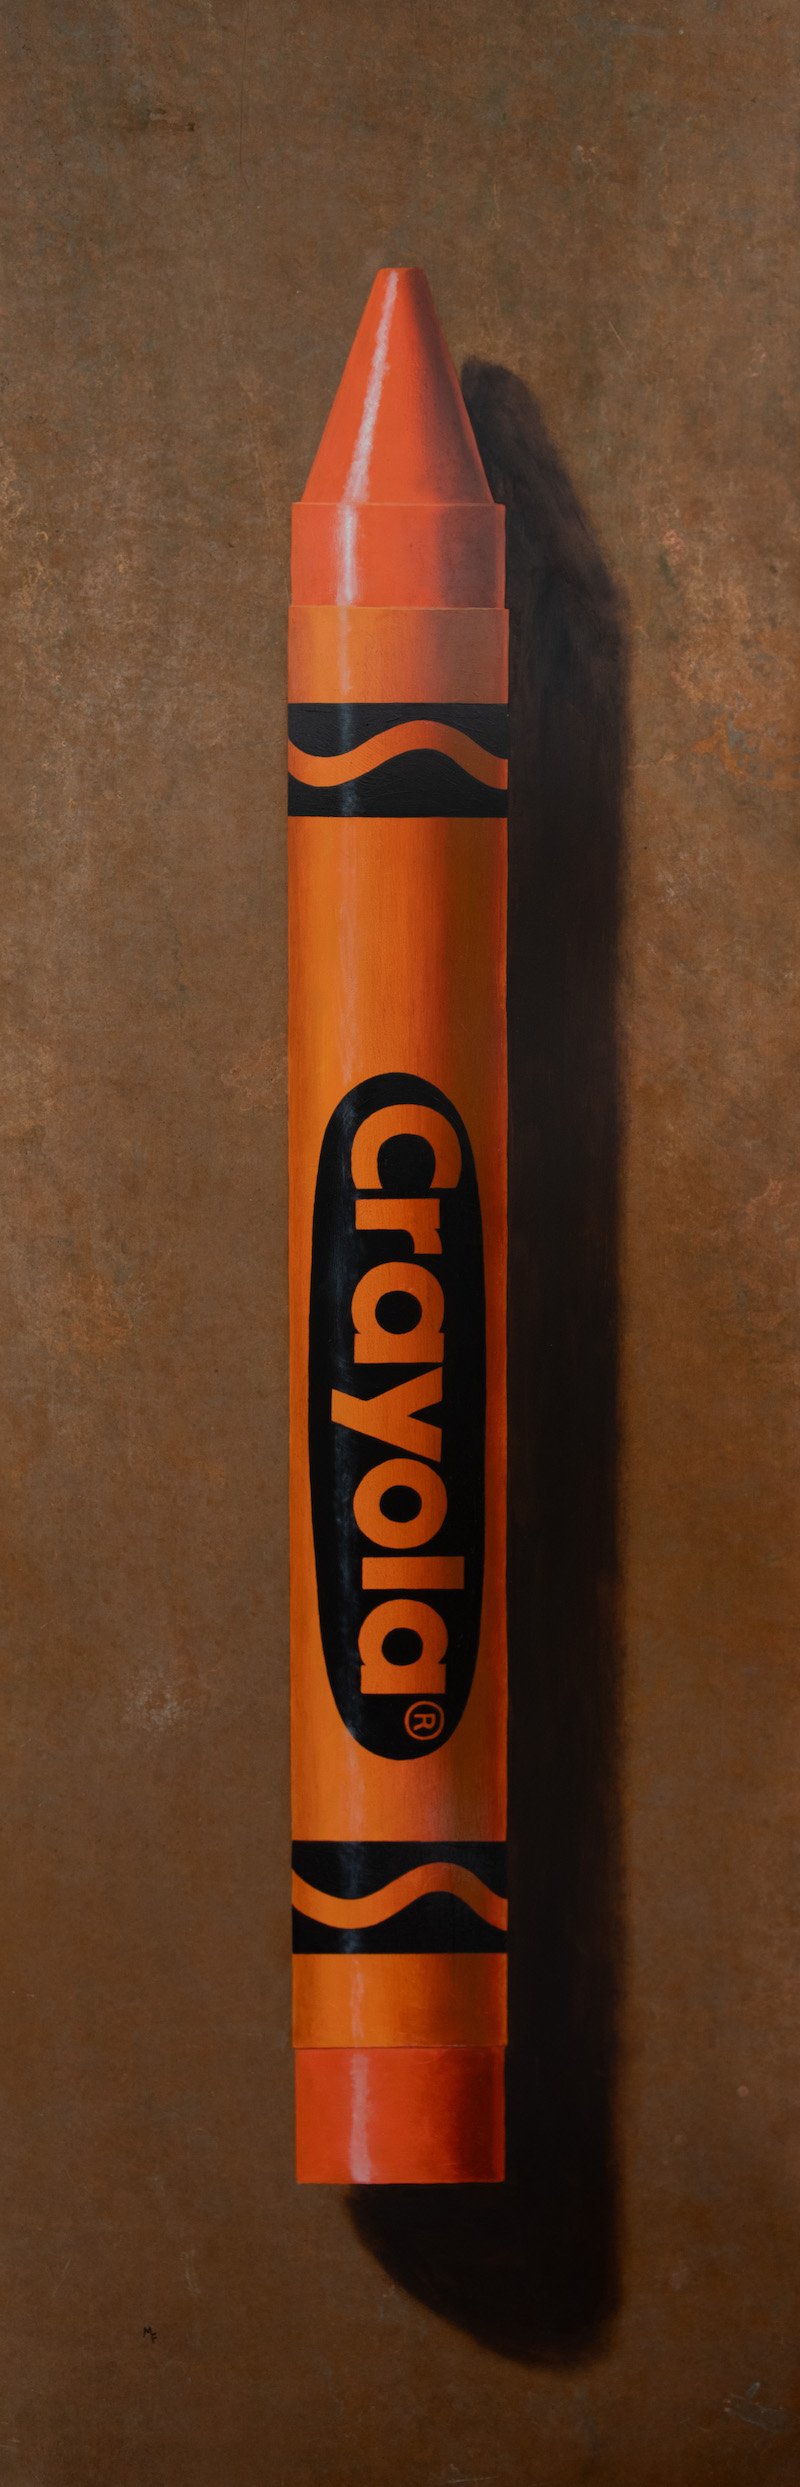 Orange Crayola.jpg